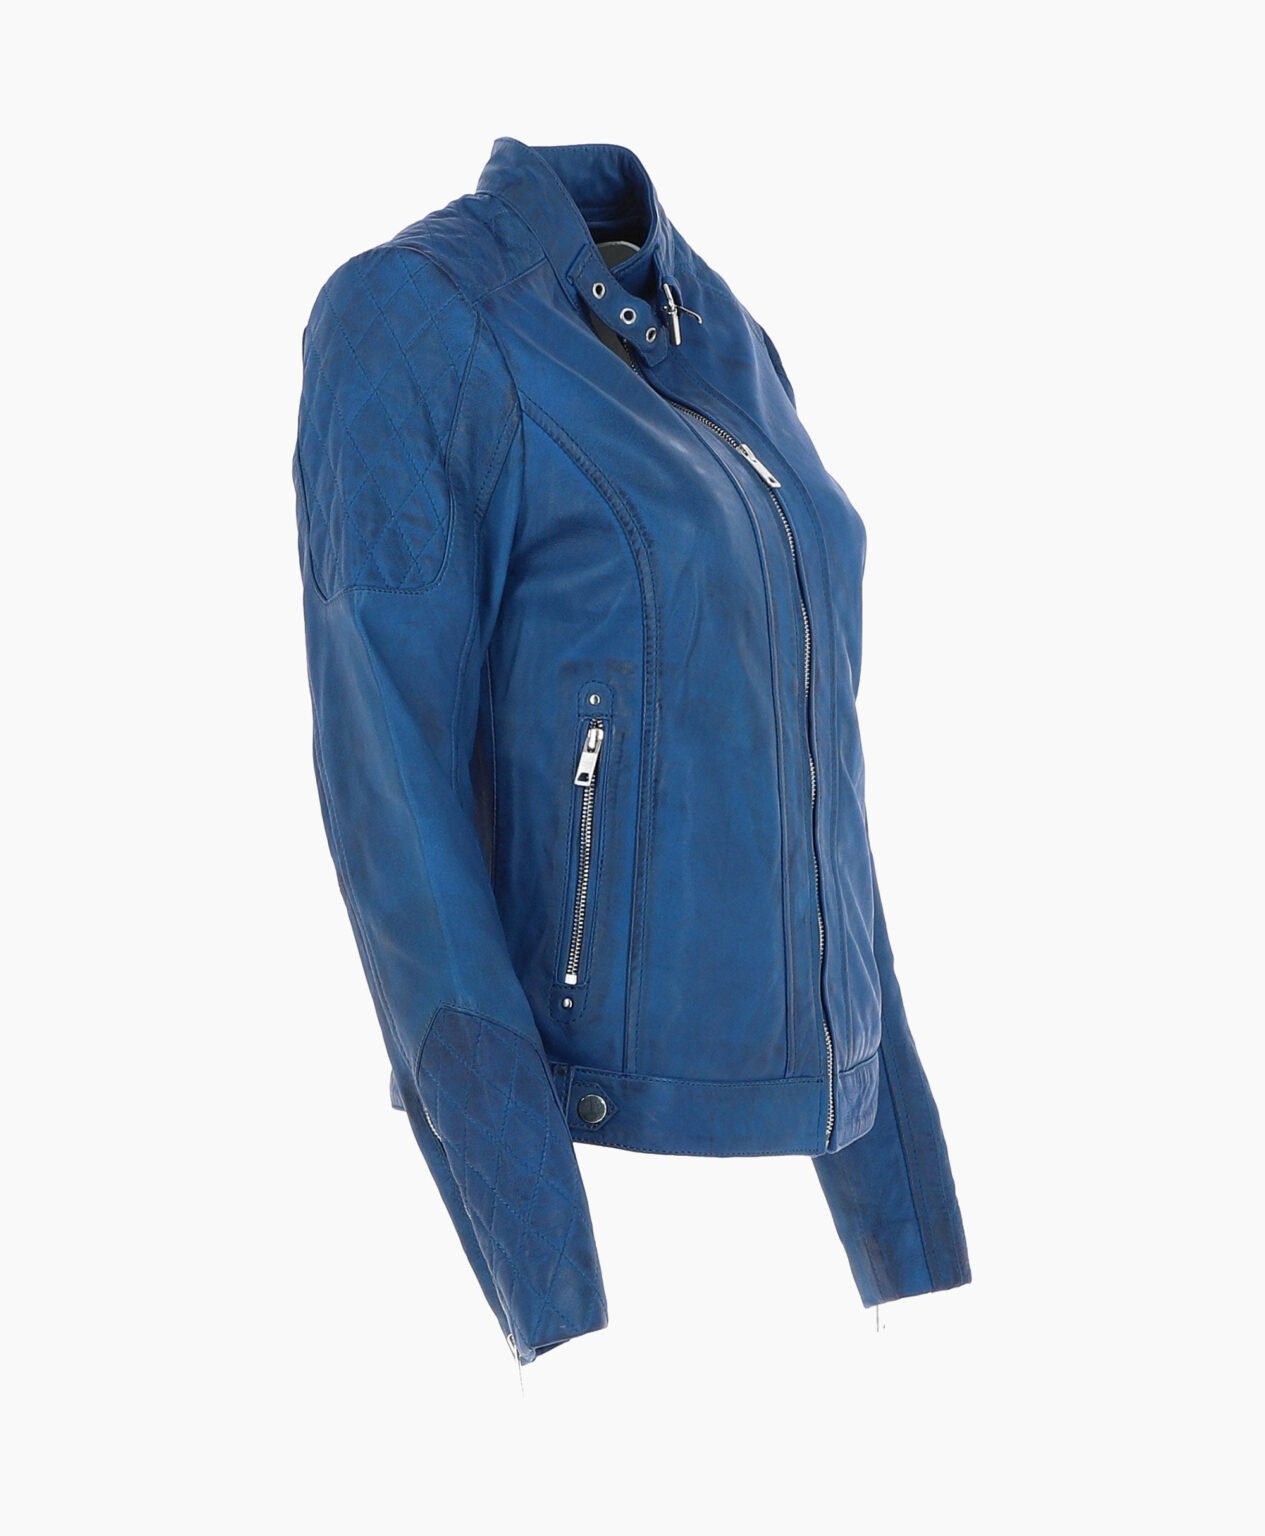 vogue-jacket-leather-jacket-blue-malibu-image203